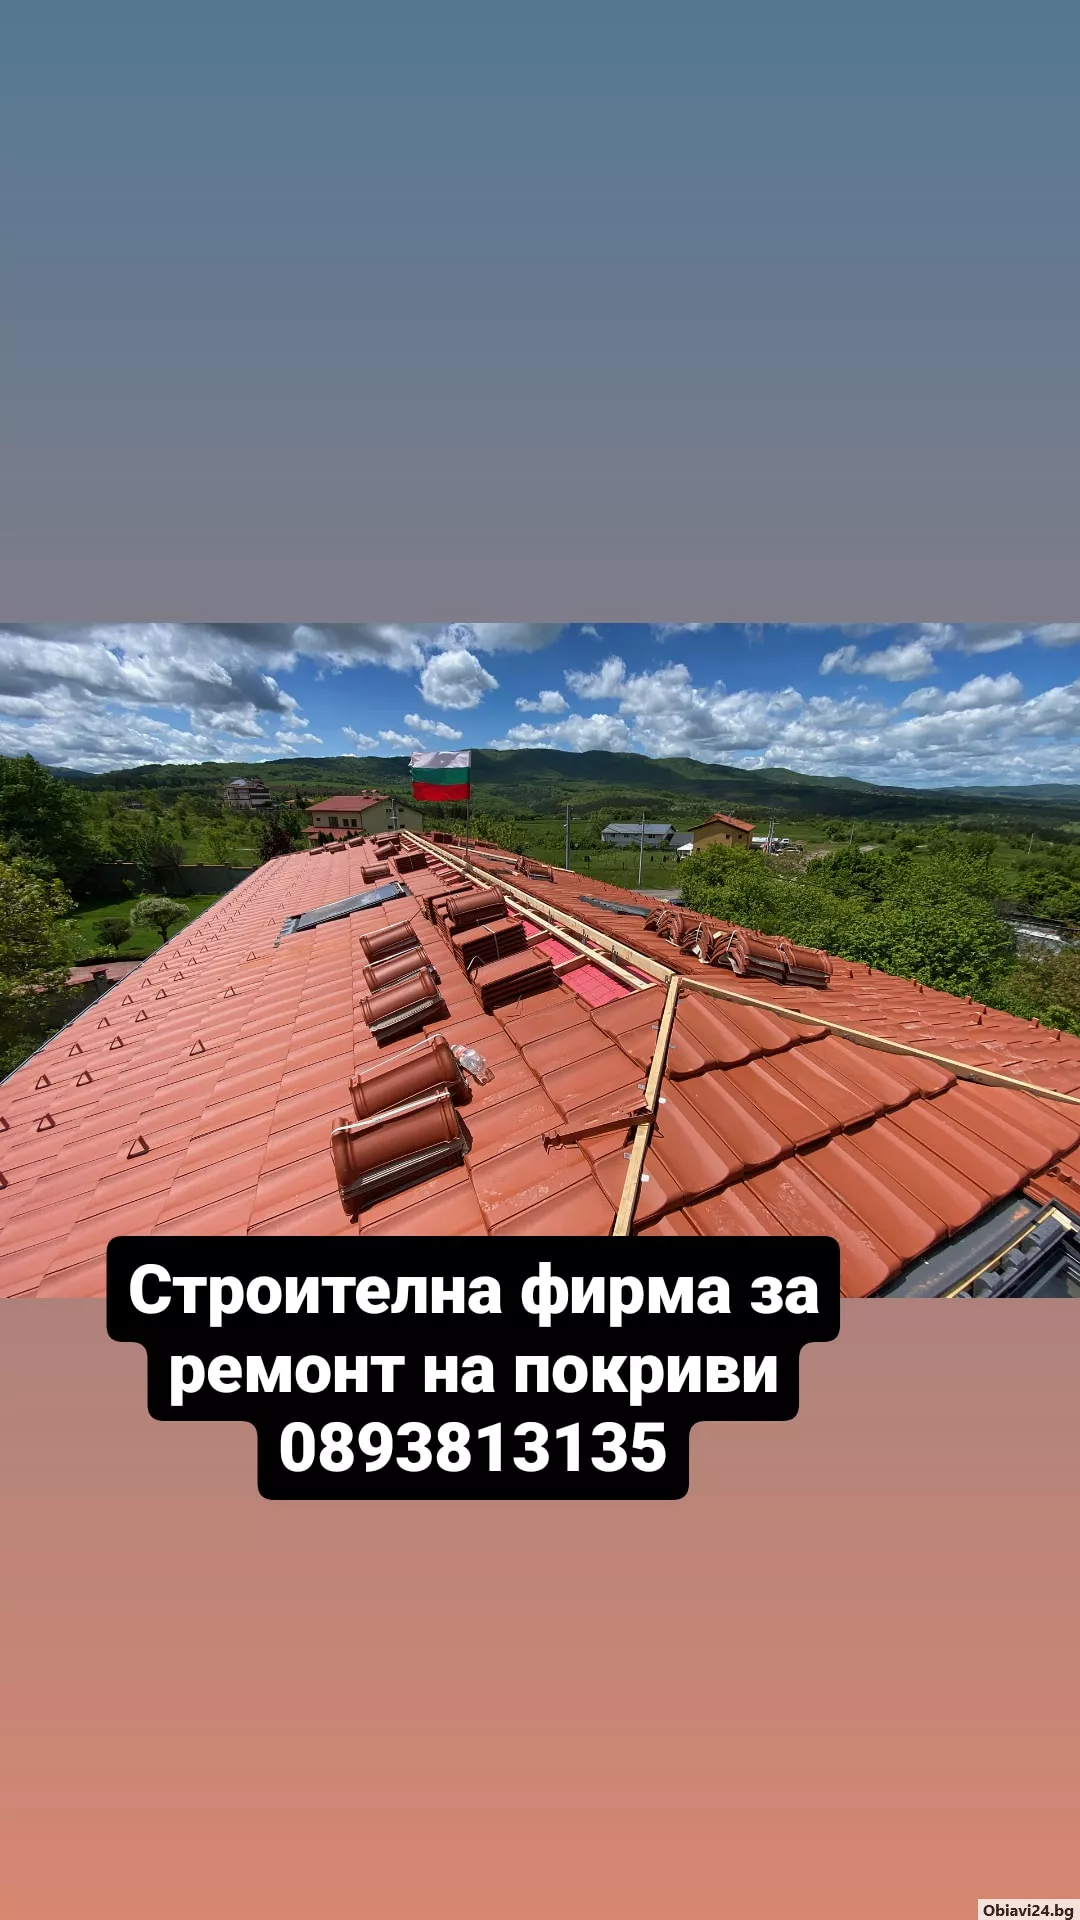 Ремонт и изграждане на покриви дървени навеси Гаранция за качество Бояджиски и Тенекеджиски услуги л - obiavi24.bg